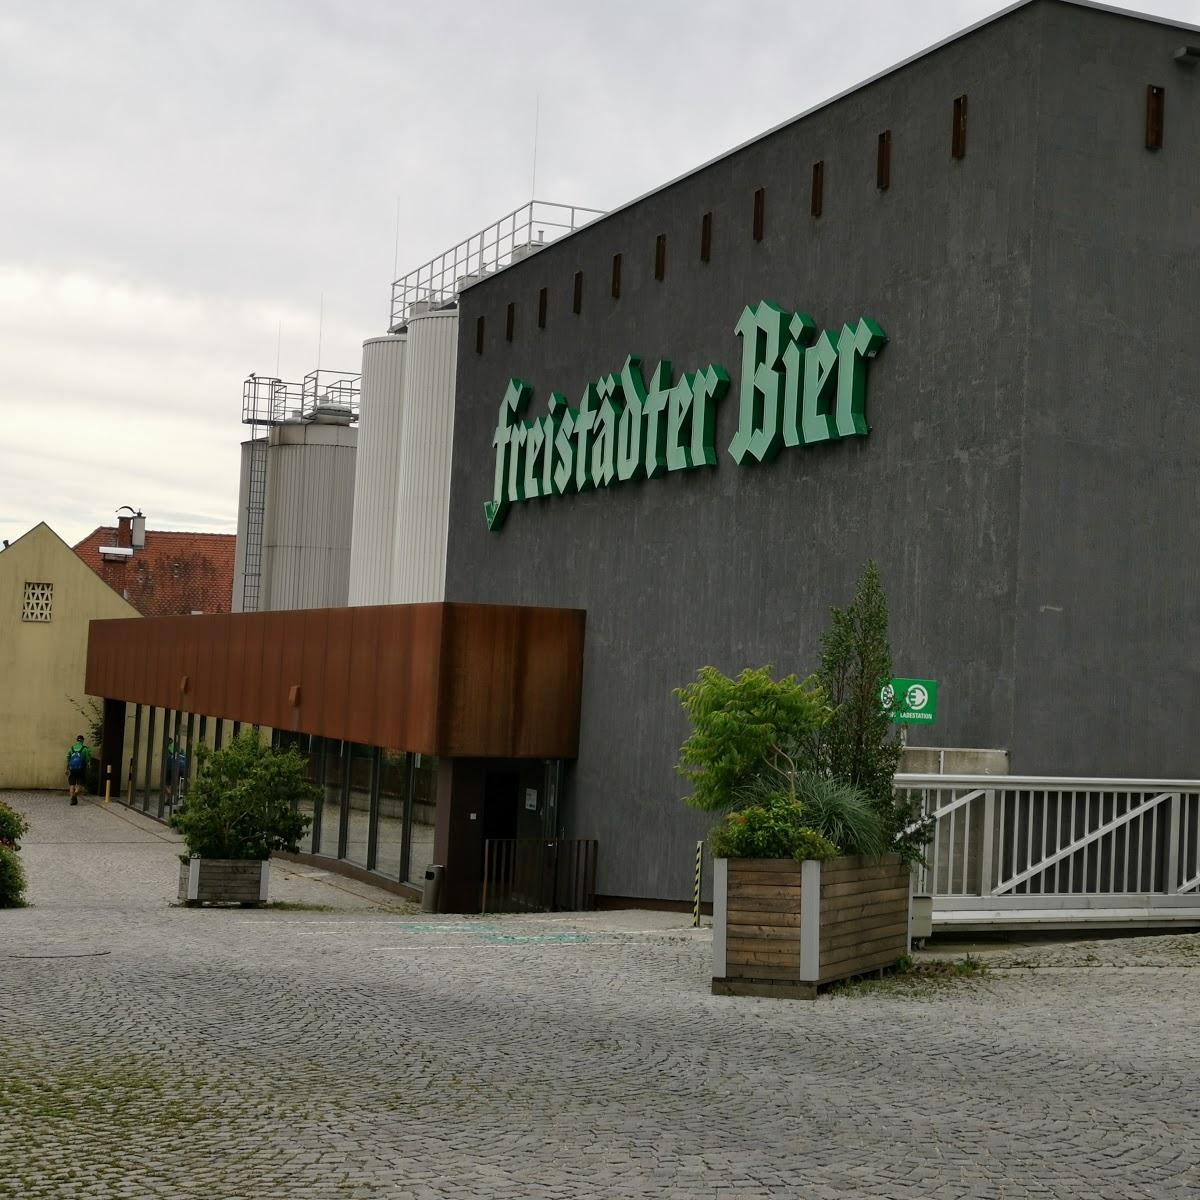 Restaurant "Freistädter Brauhaus" in Freistadt